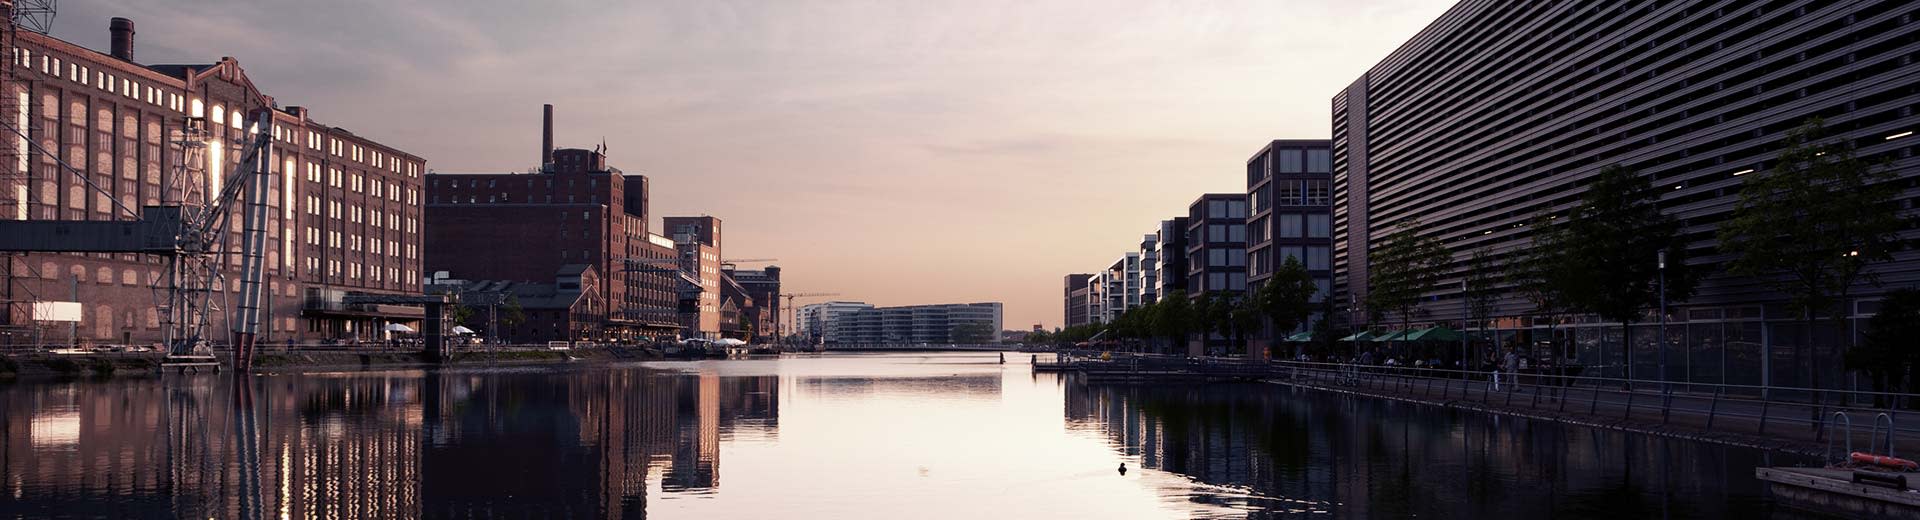 Los antiguos edificios industriales de Duisburg se ubicaron contra un sol atenuado, con un canal que conduce a un horizonte lejano.